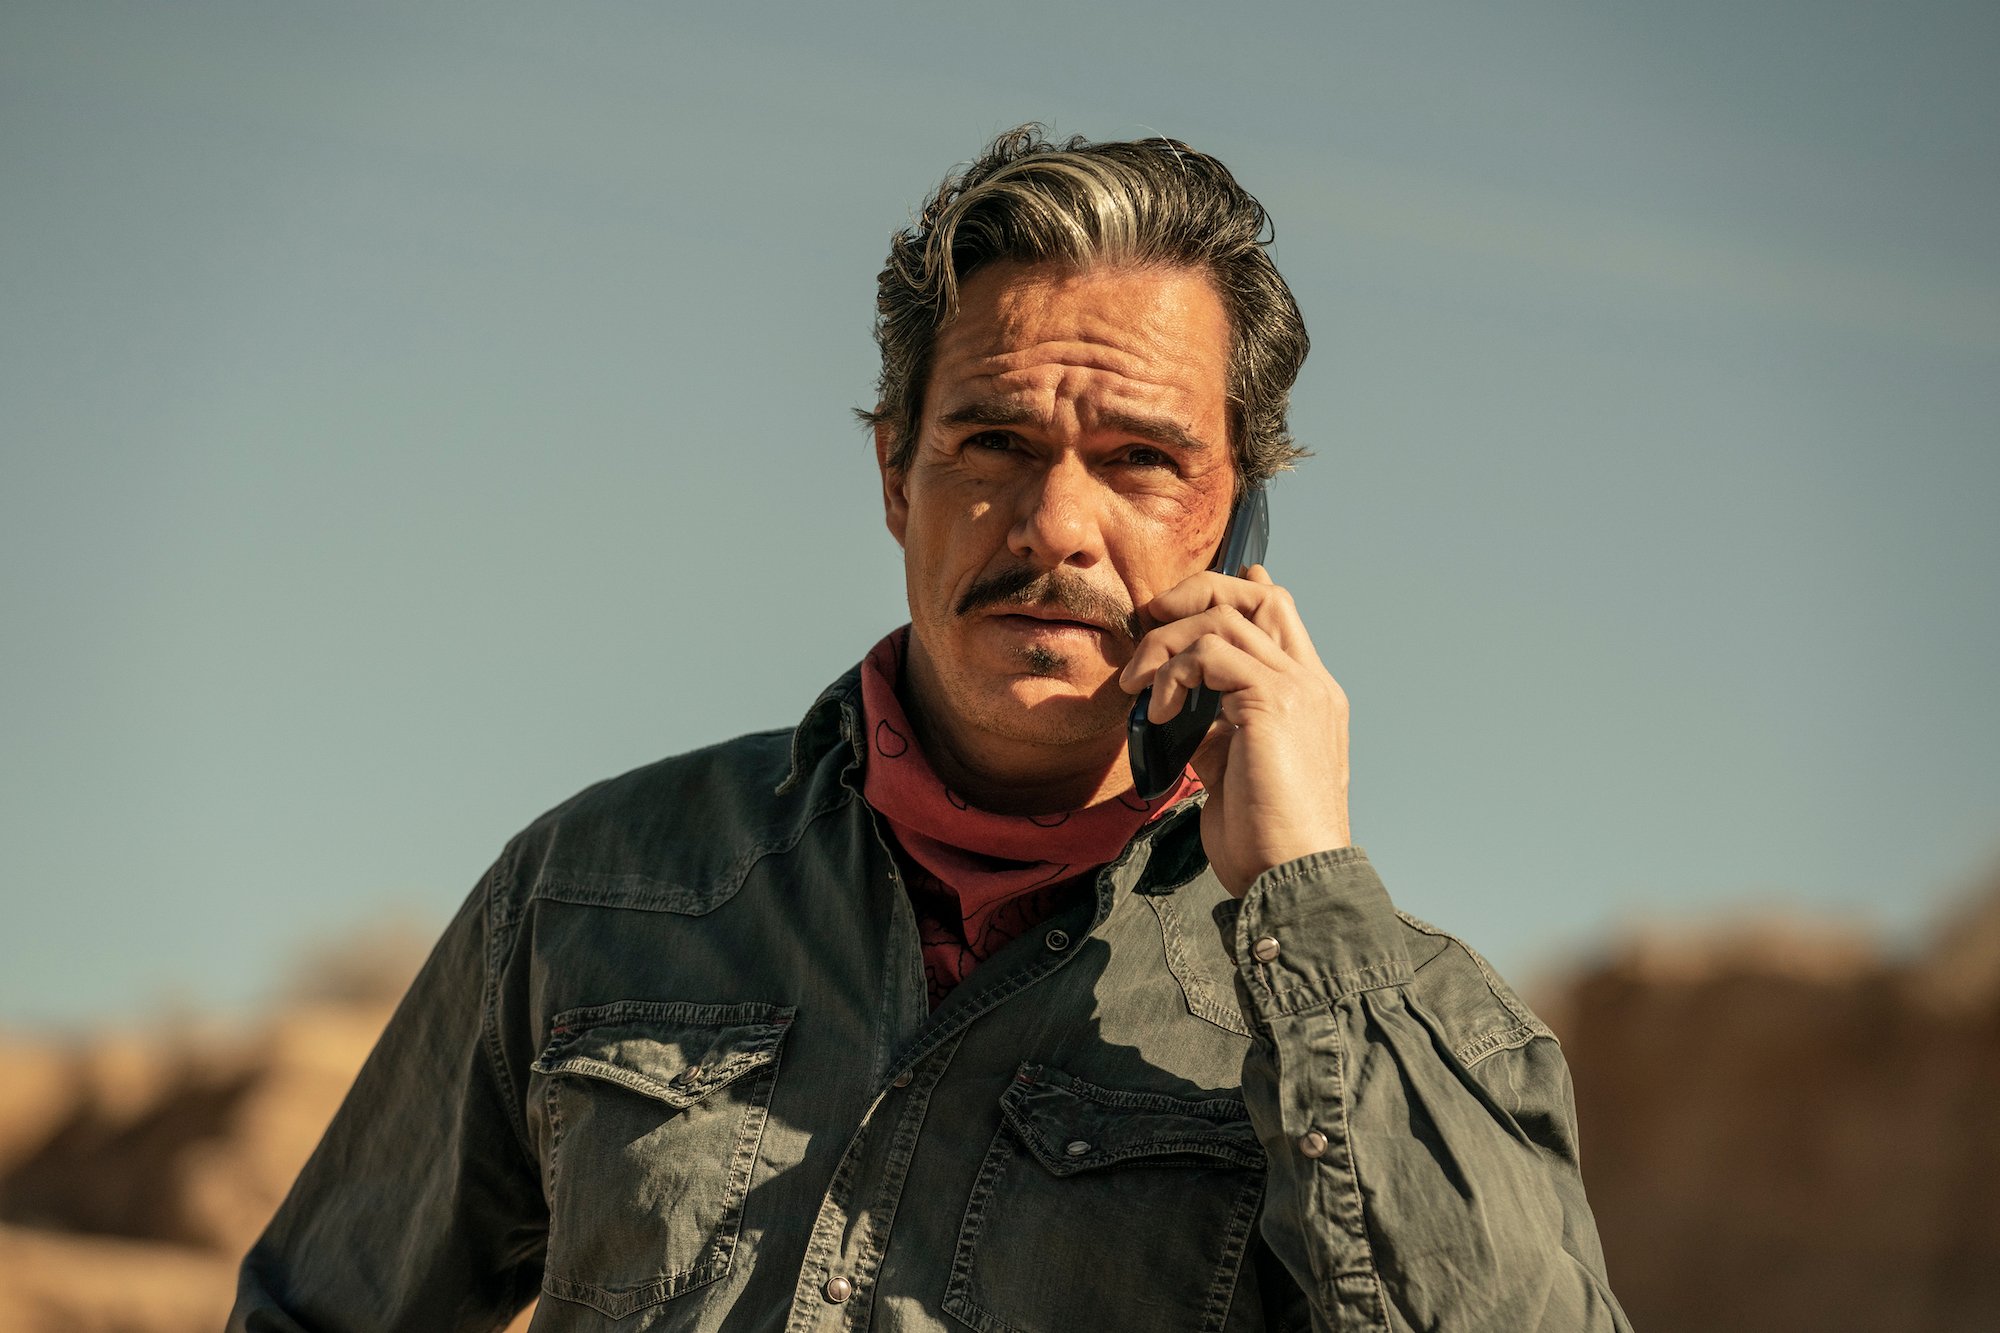 'Better Call Saul': Lalo Salamanca (Tony Dalton) has an intense phone call